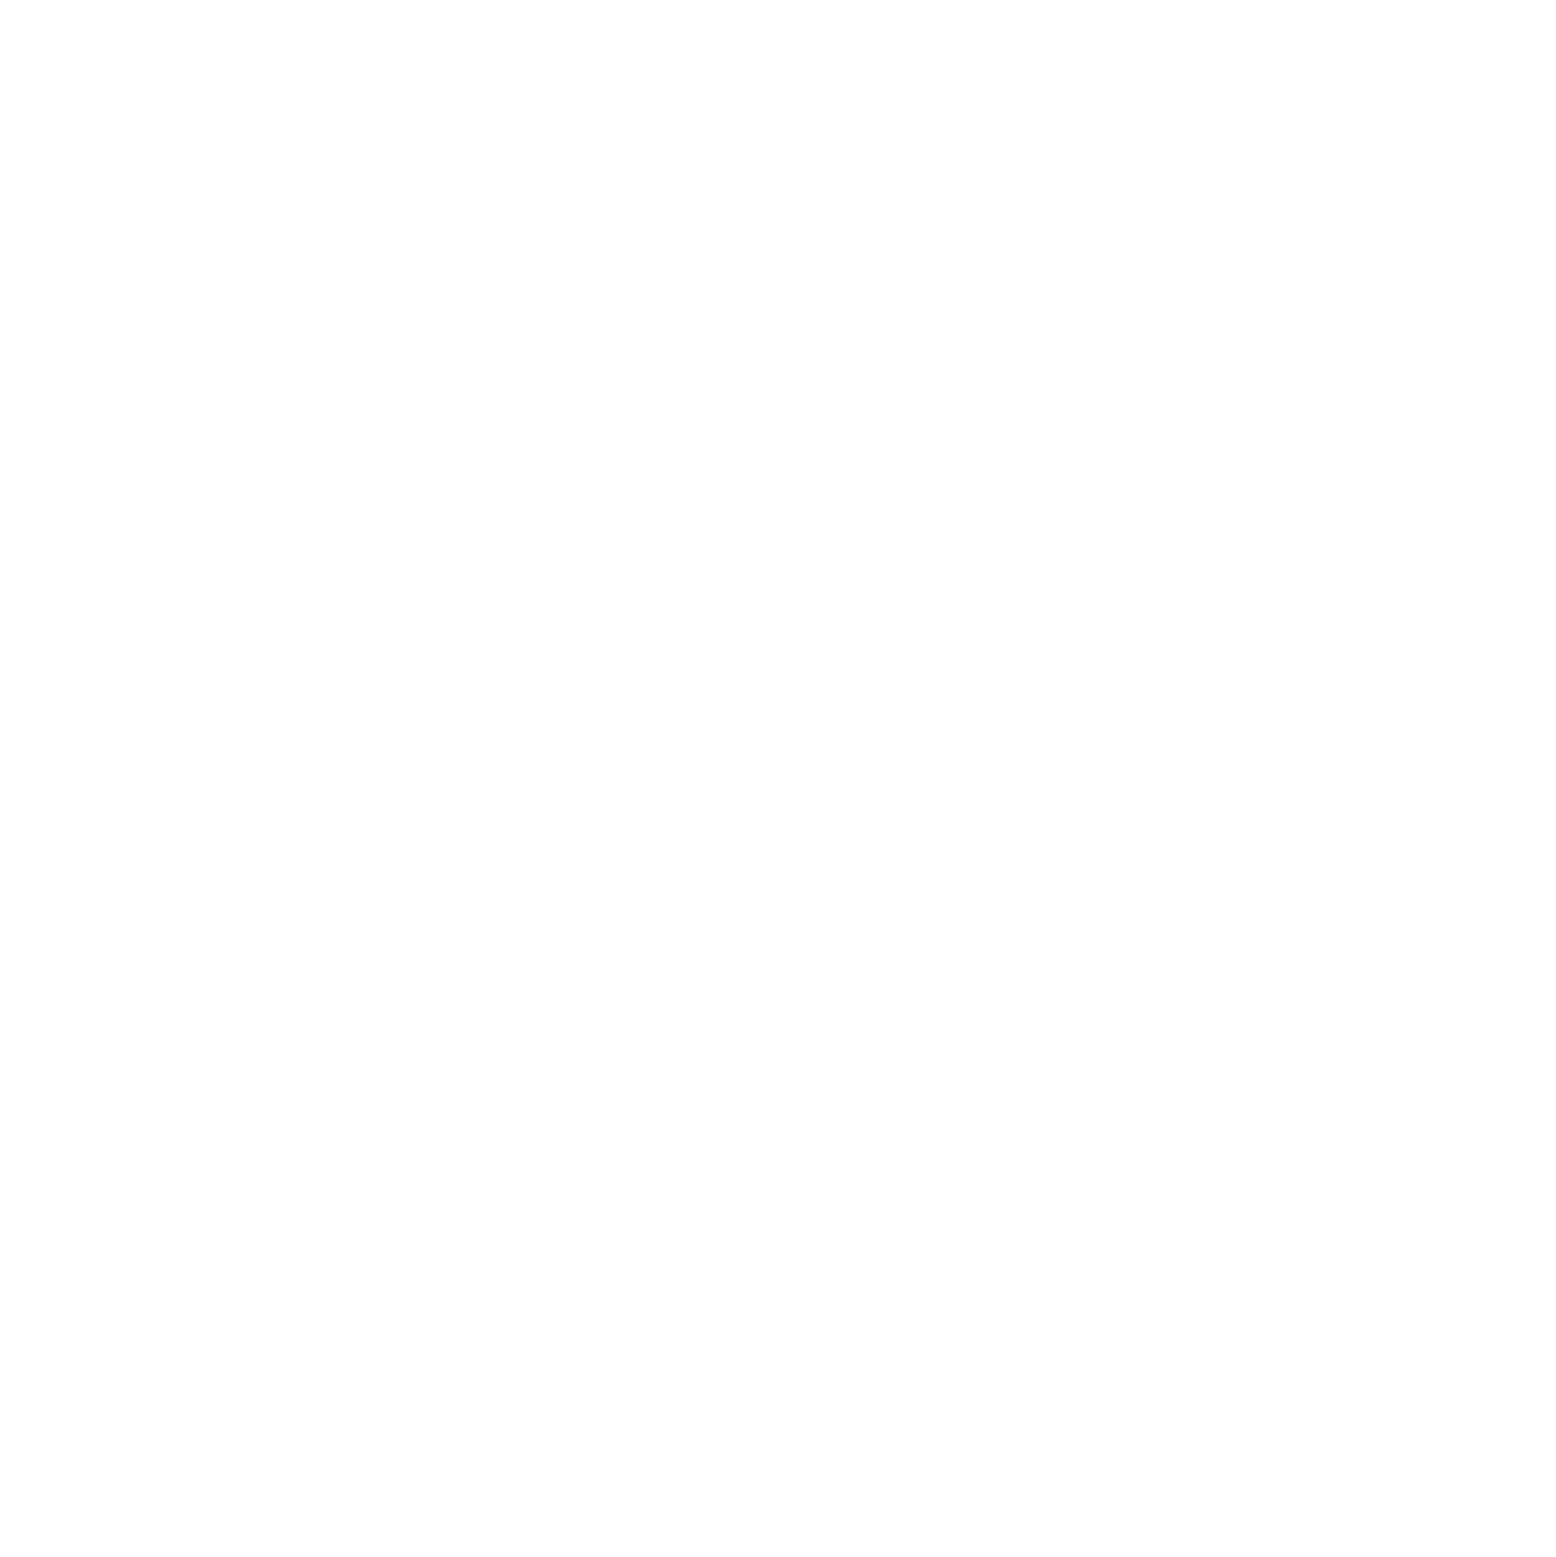 Lufthansa logo for dark backgrounds (transparent PNG)